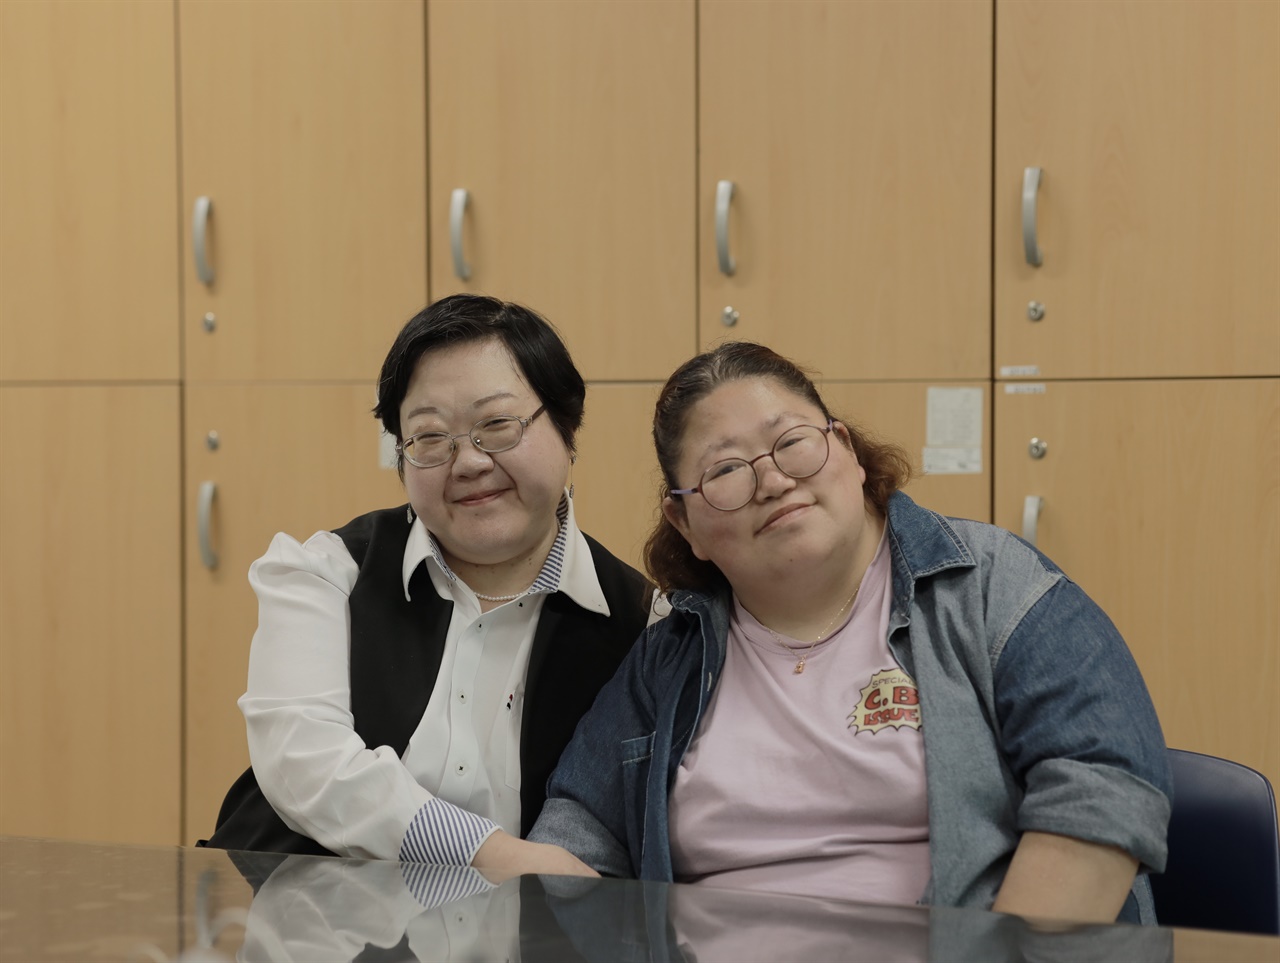 왼쪽부터 백지선(52세), 유재록(36세). 문화예술직무를 수행하는 과천시장애인복지관 직업적응훈련실에서 이야기를 나눴다. 